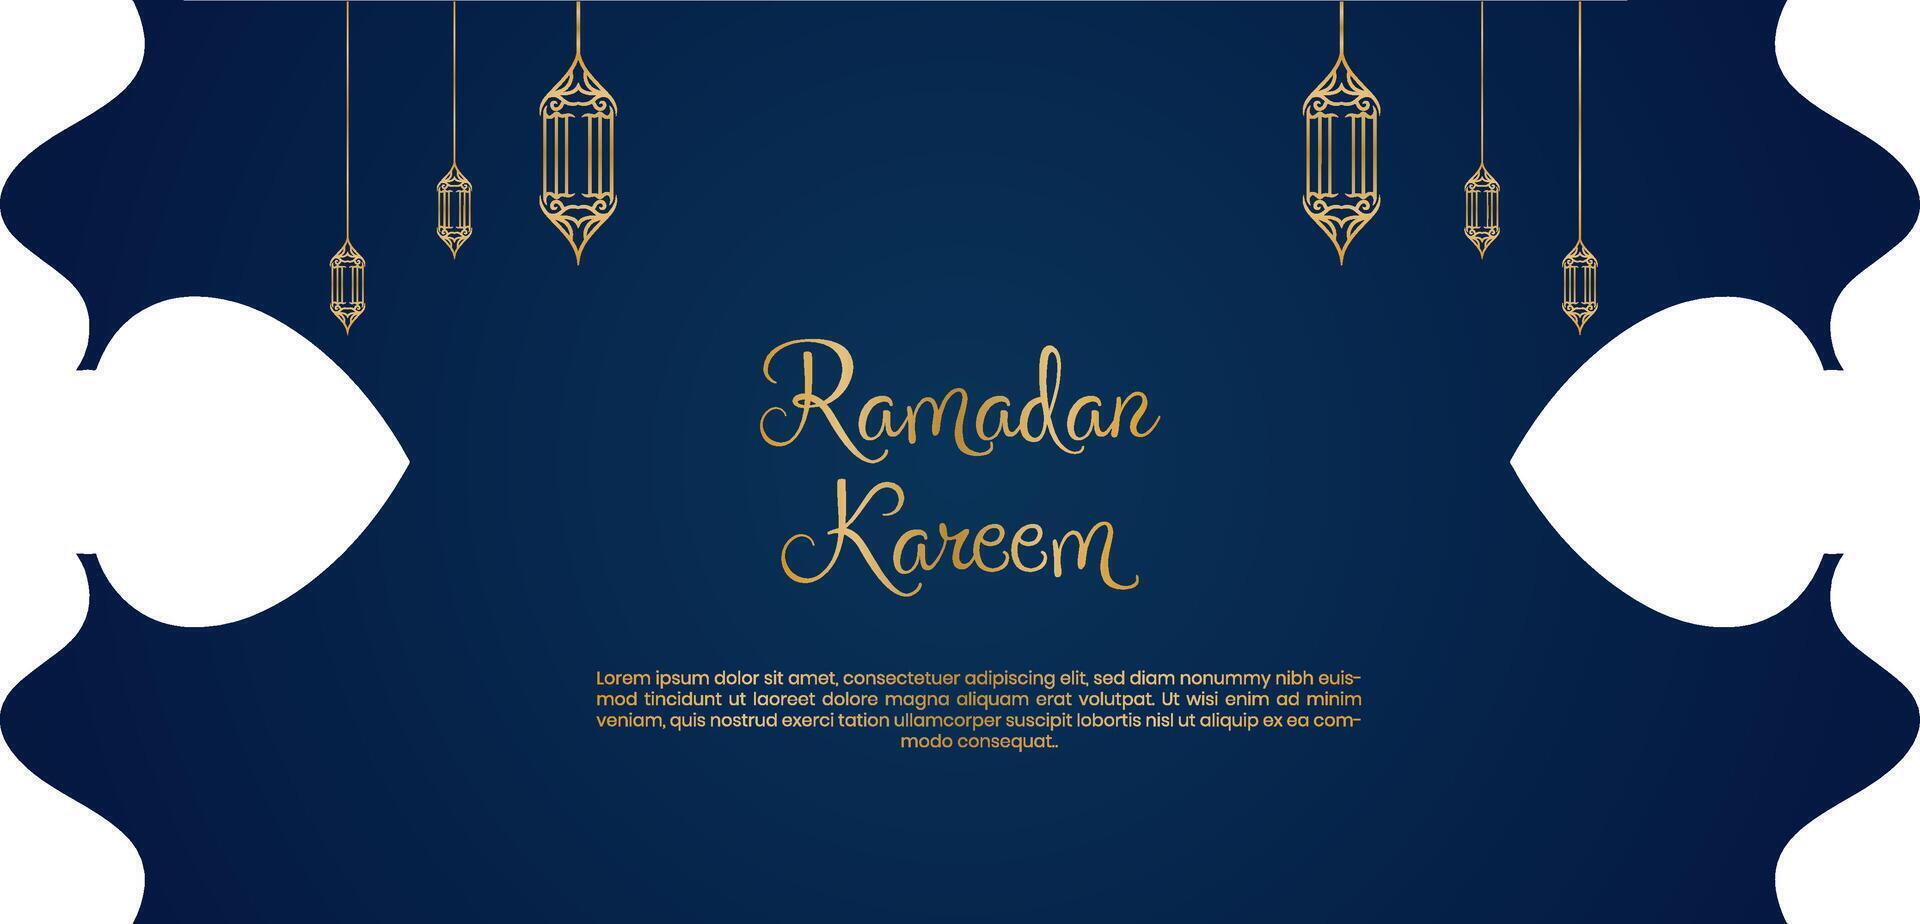 Ramadan kareem groet kaart met goud lantaarns vector